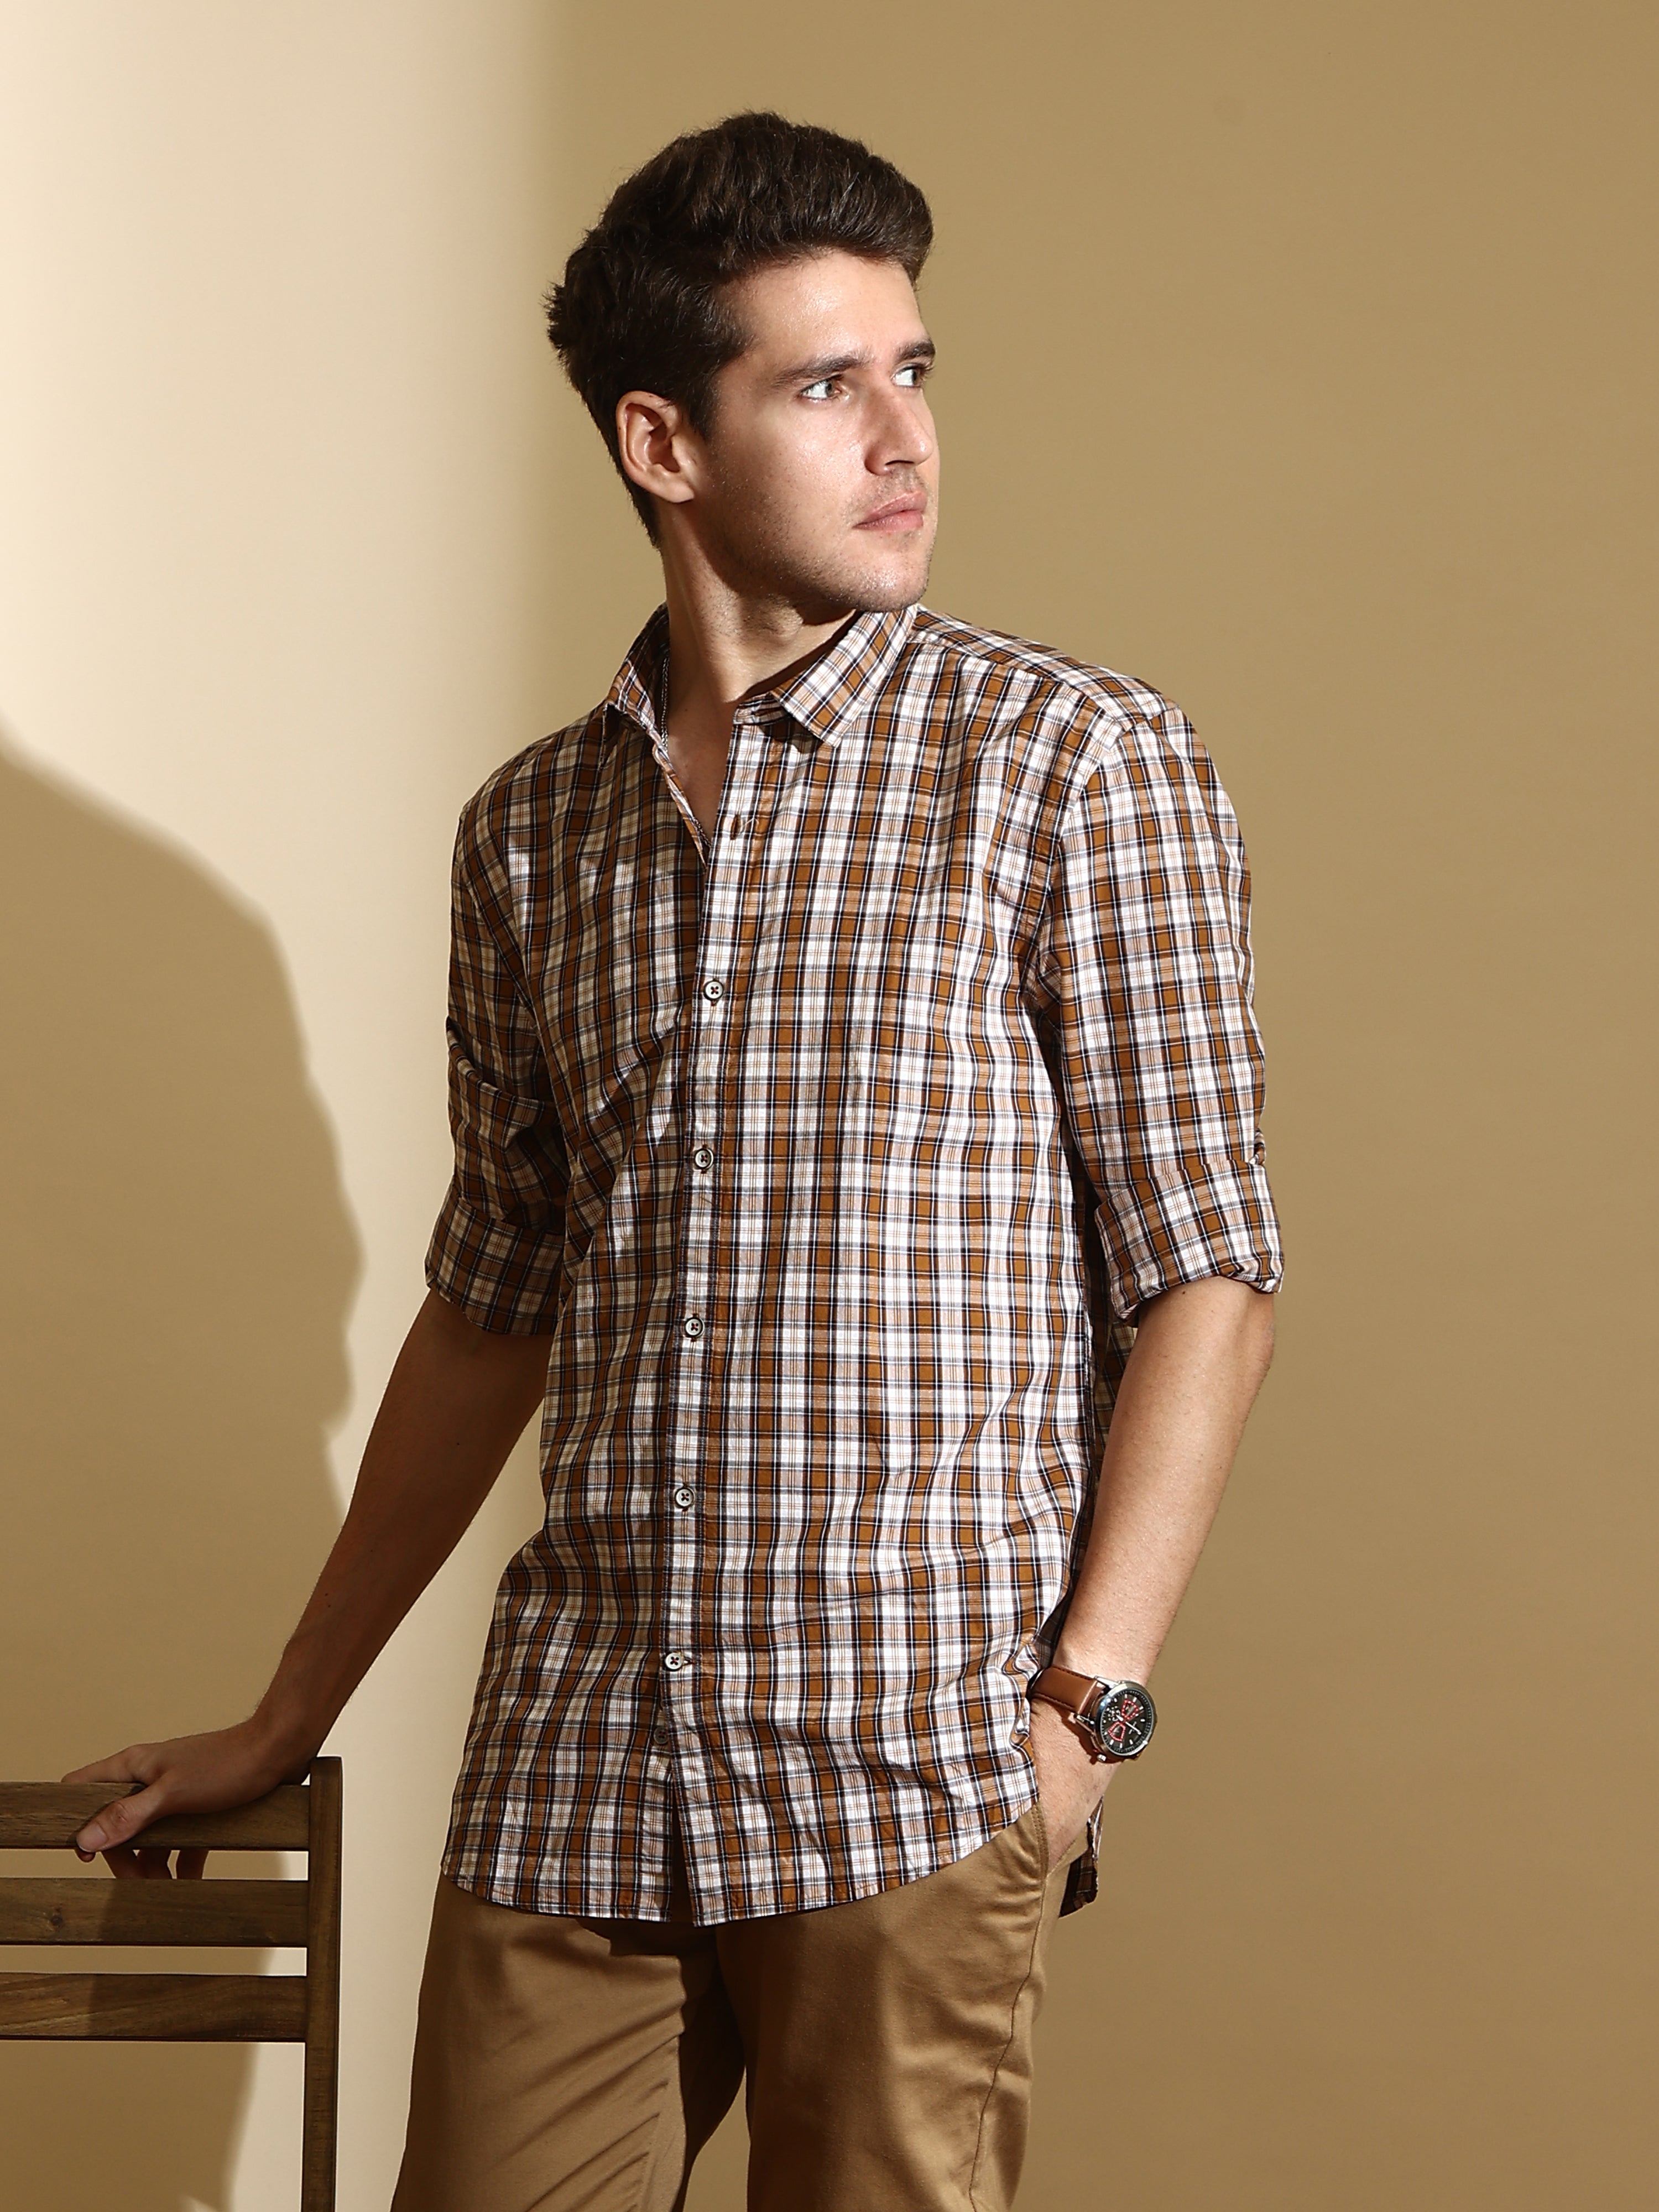 Men's Check Shirts - Buy Casual Check Shirt, Chex Shirt Online at